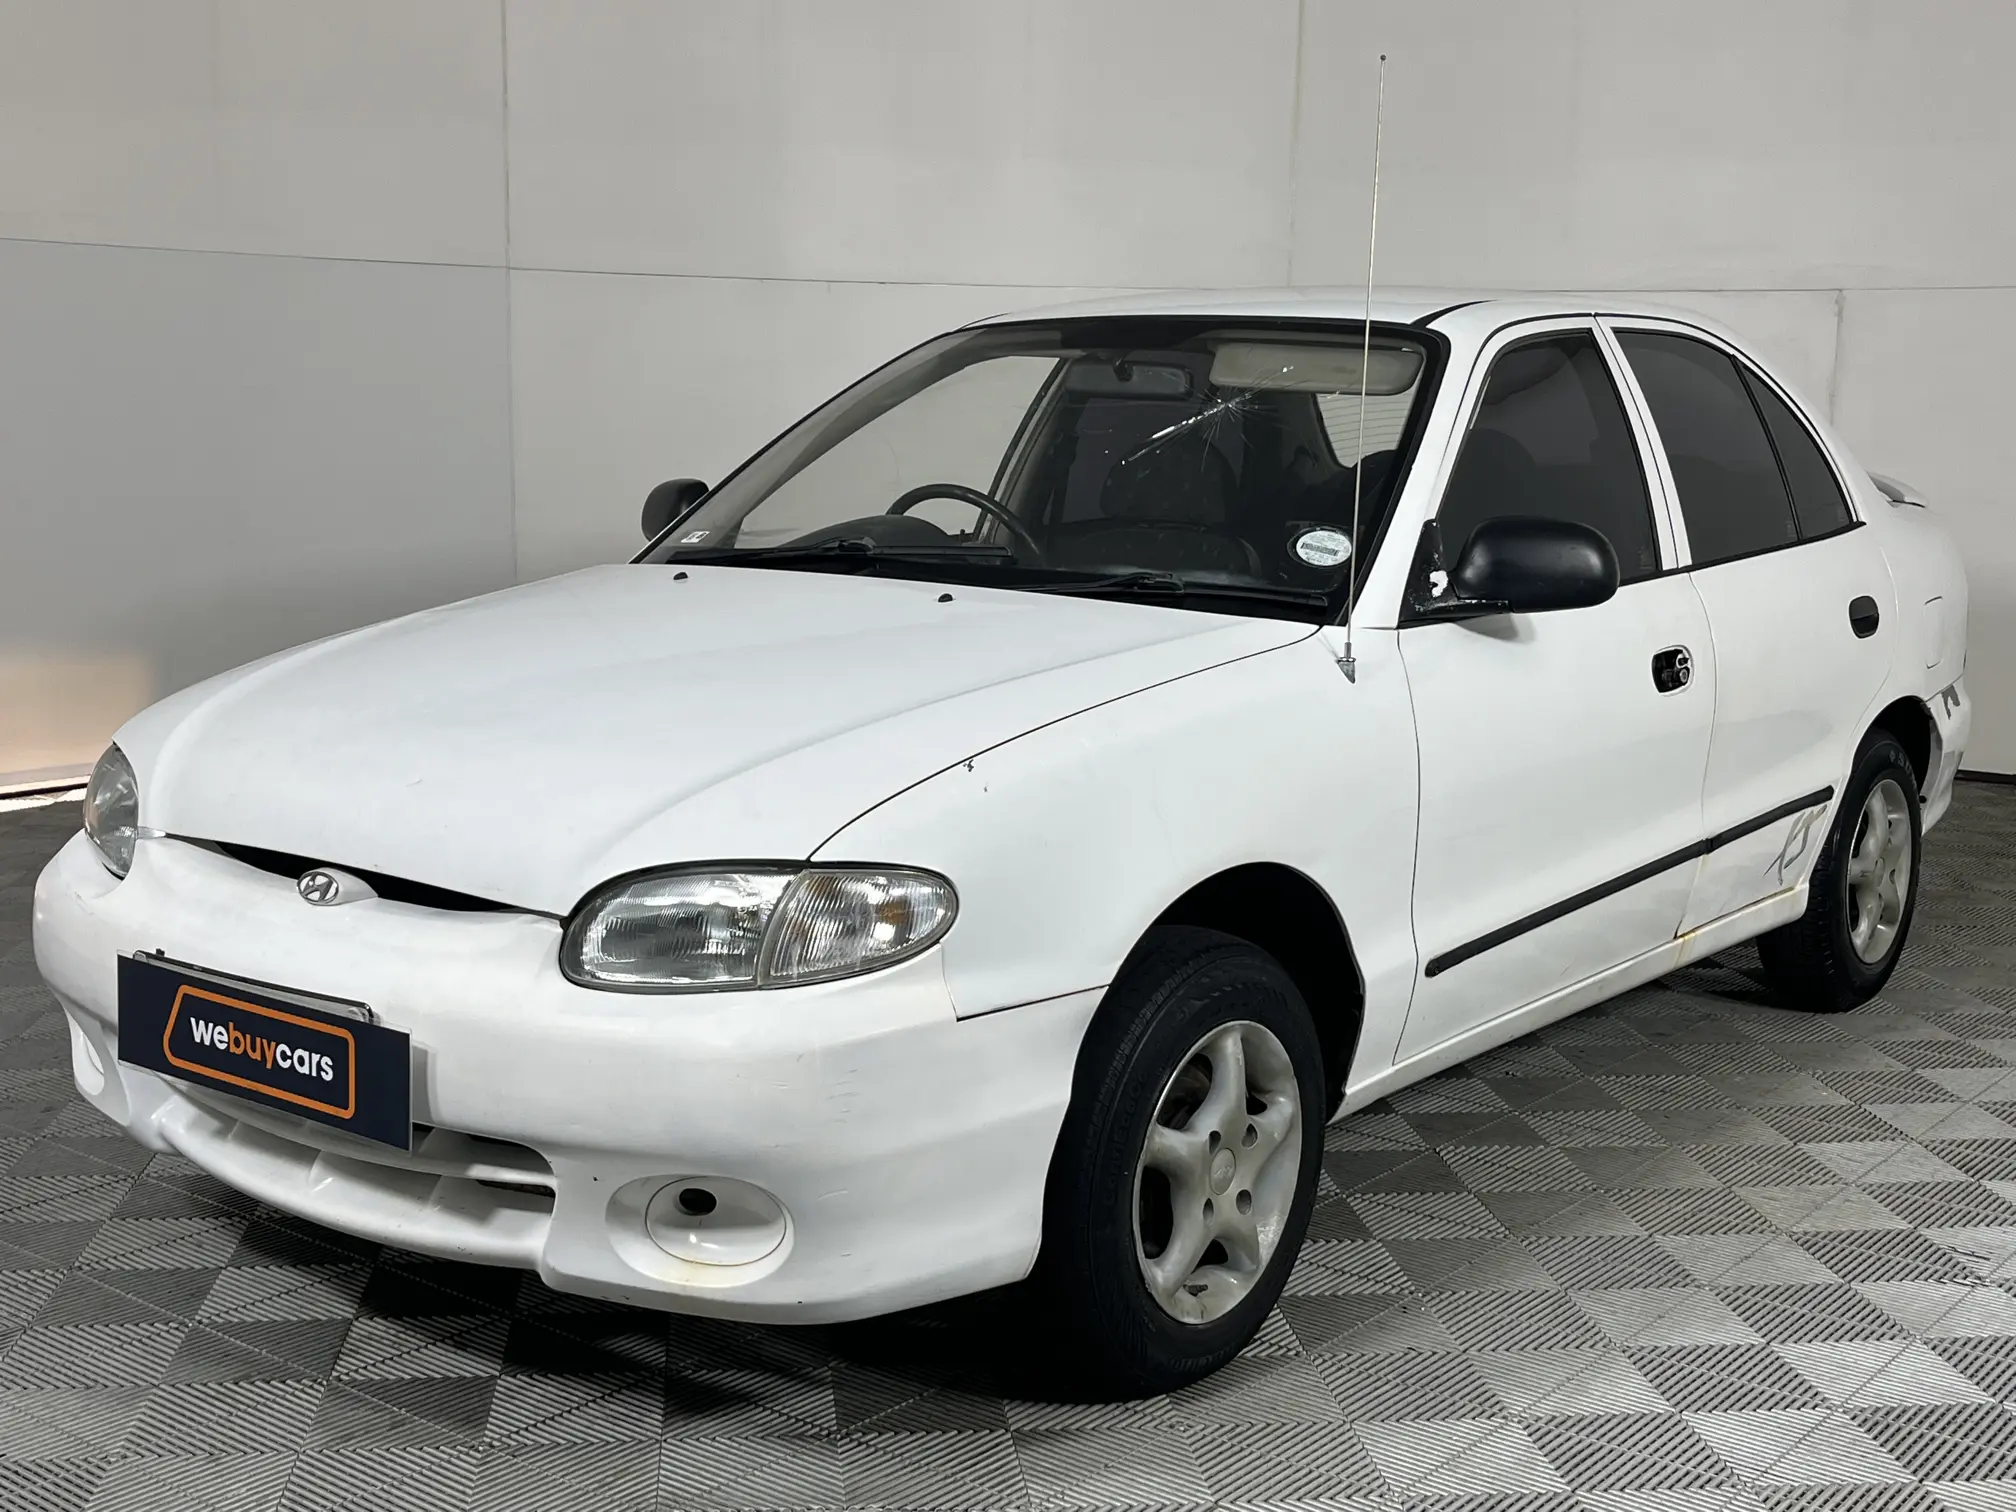 1998 Hyundai Accent 1.3 XS